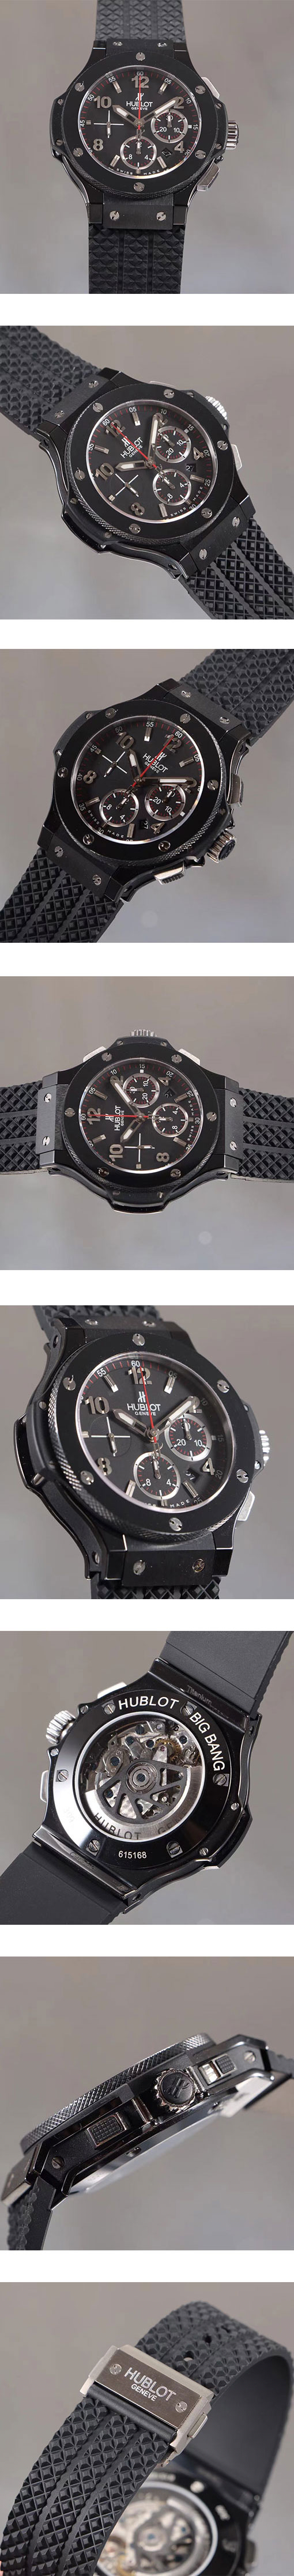 ウブロコピー時計 ビッグバン スチール セラミック301.SX.130.RX 時計はどうですか？